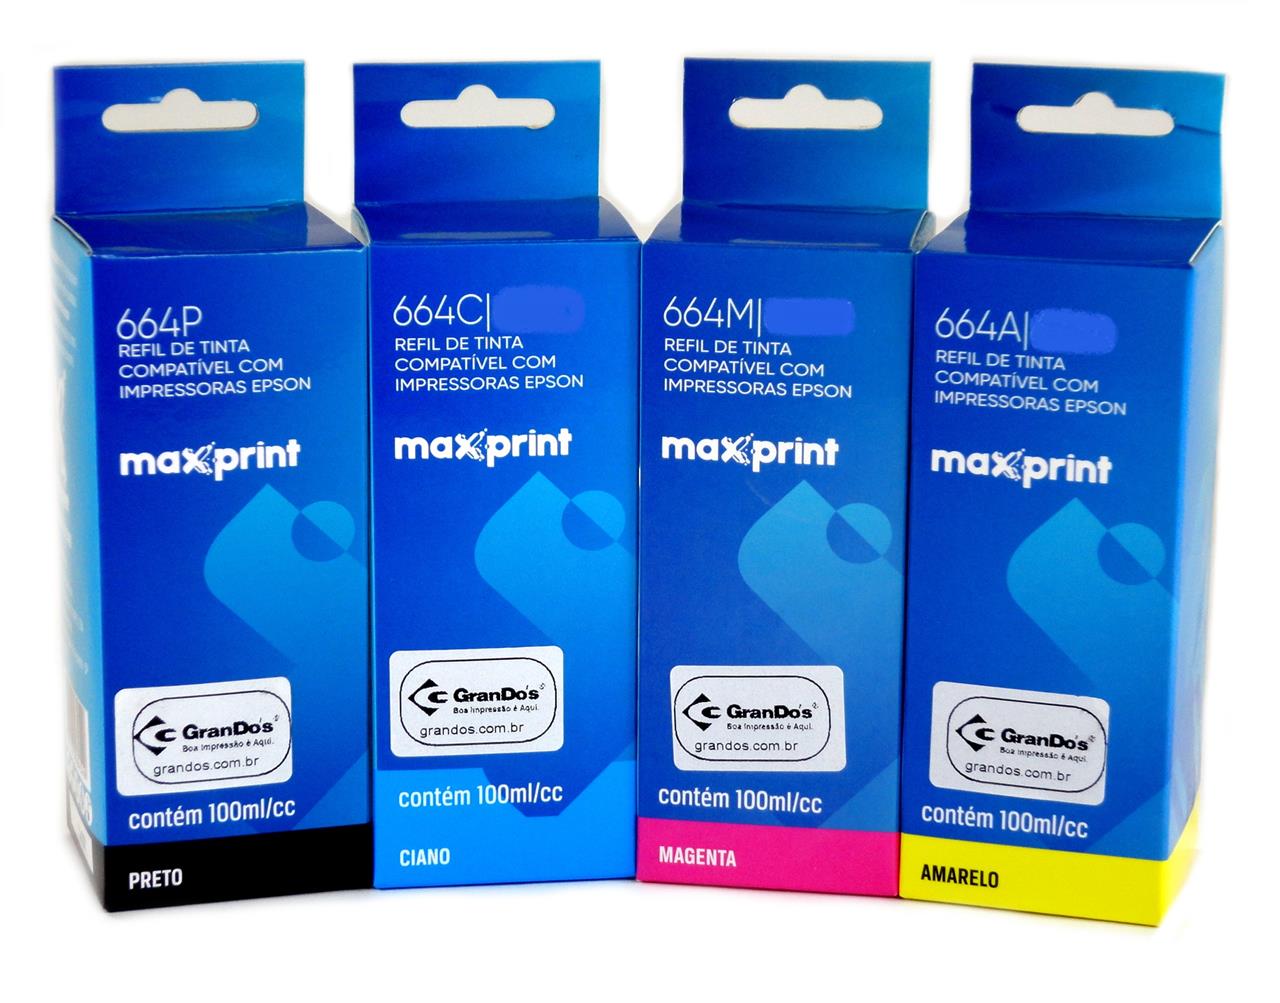 Kit de Refil de Tinta Maxprint Similar 664 em Pack com as 4 Cores